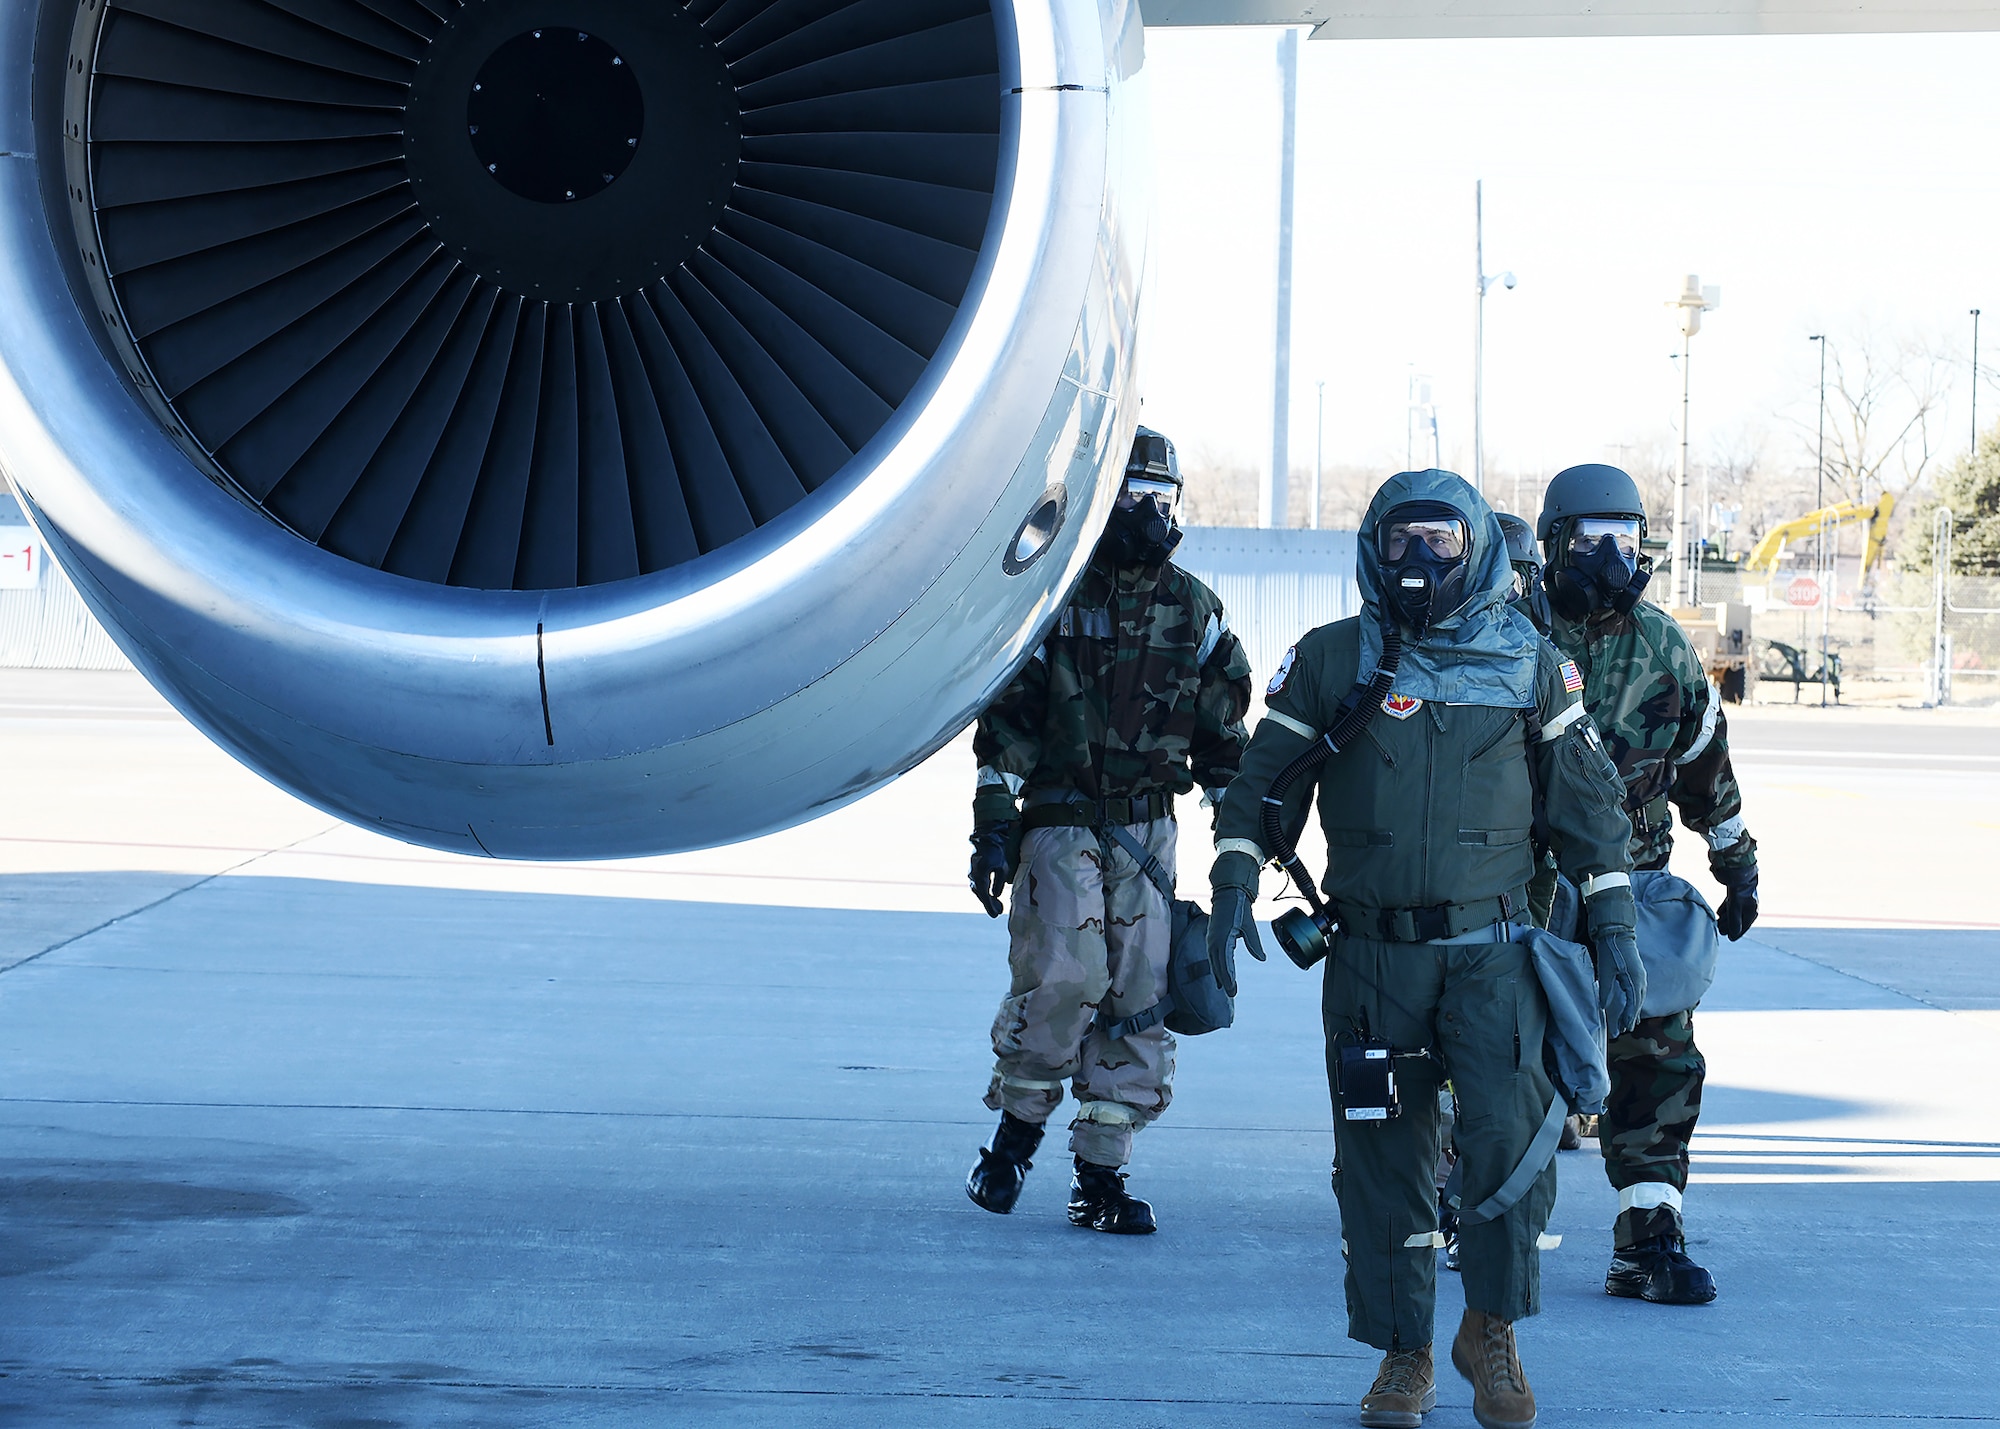 Three Airmen in MOPP gear walk by an engine aircraft